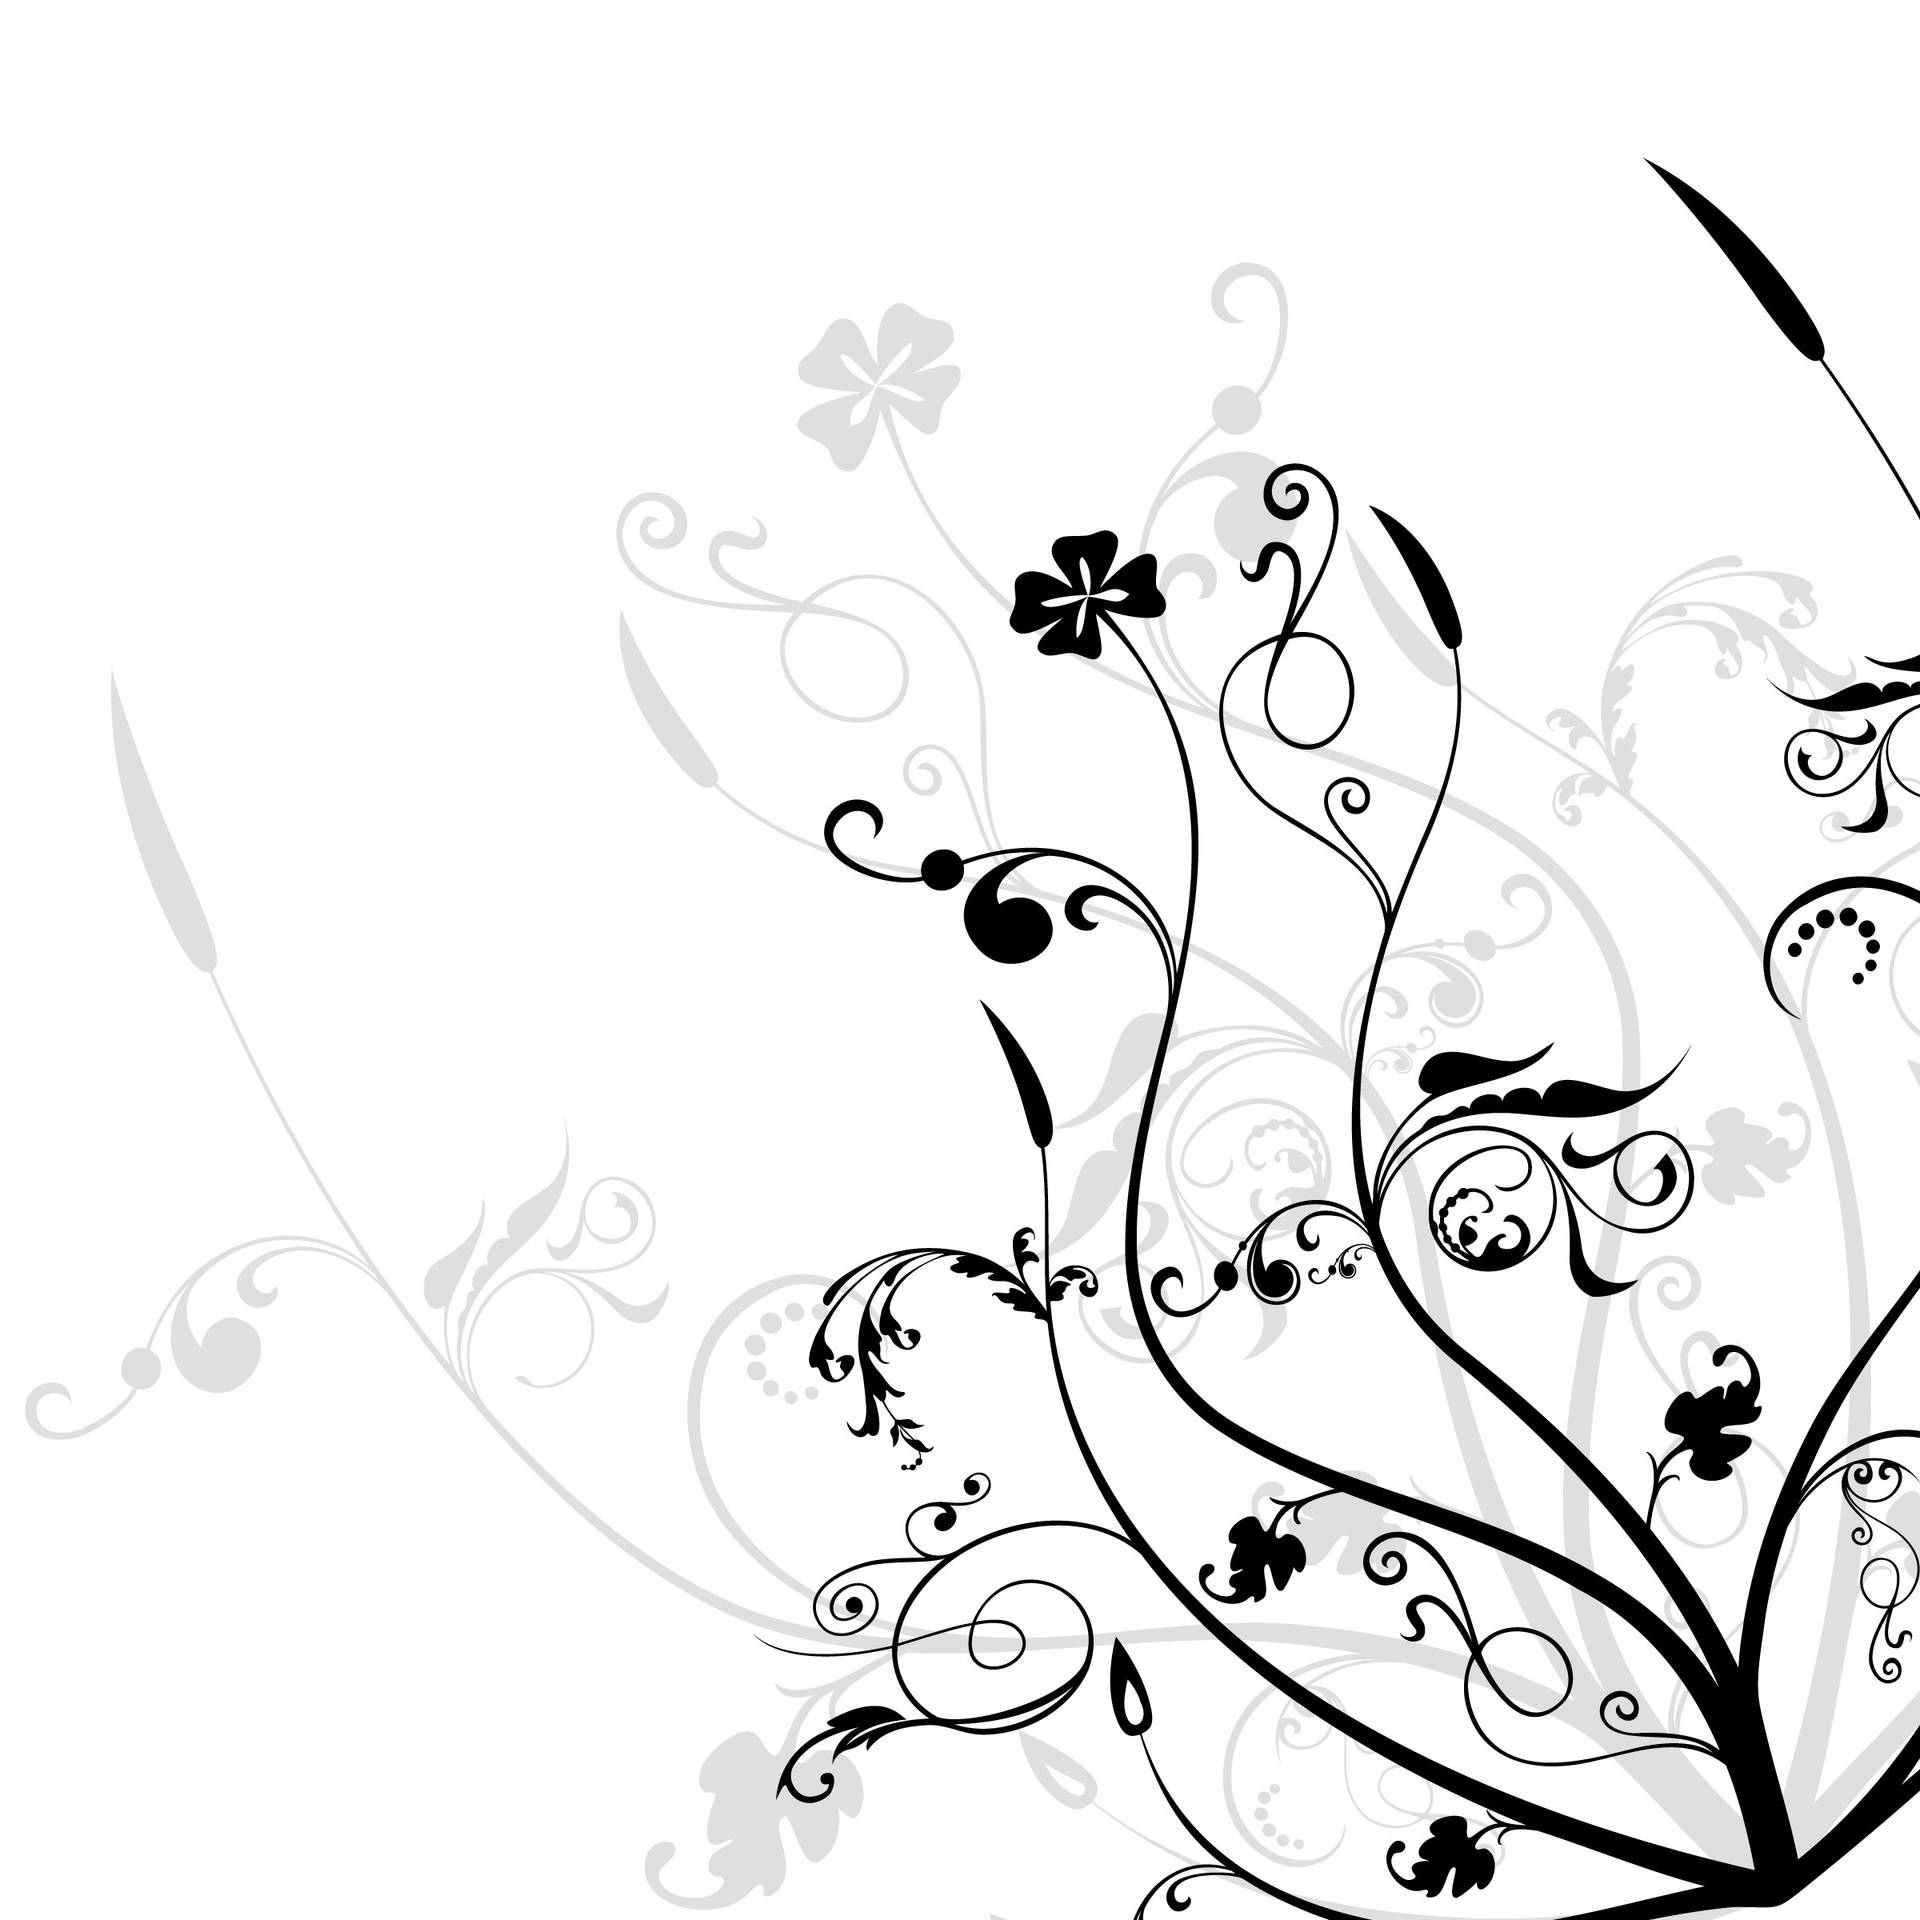 Floresen Blanco Y Negro En Una Obra De Arte En 2d Fondo de pantalla